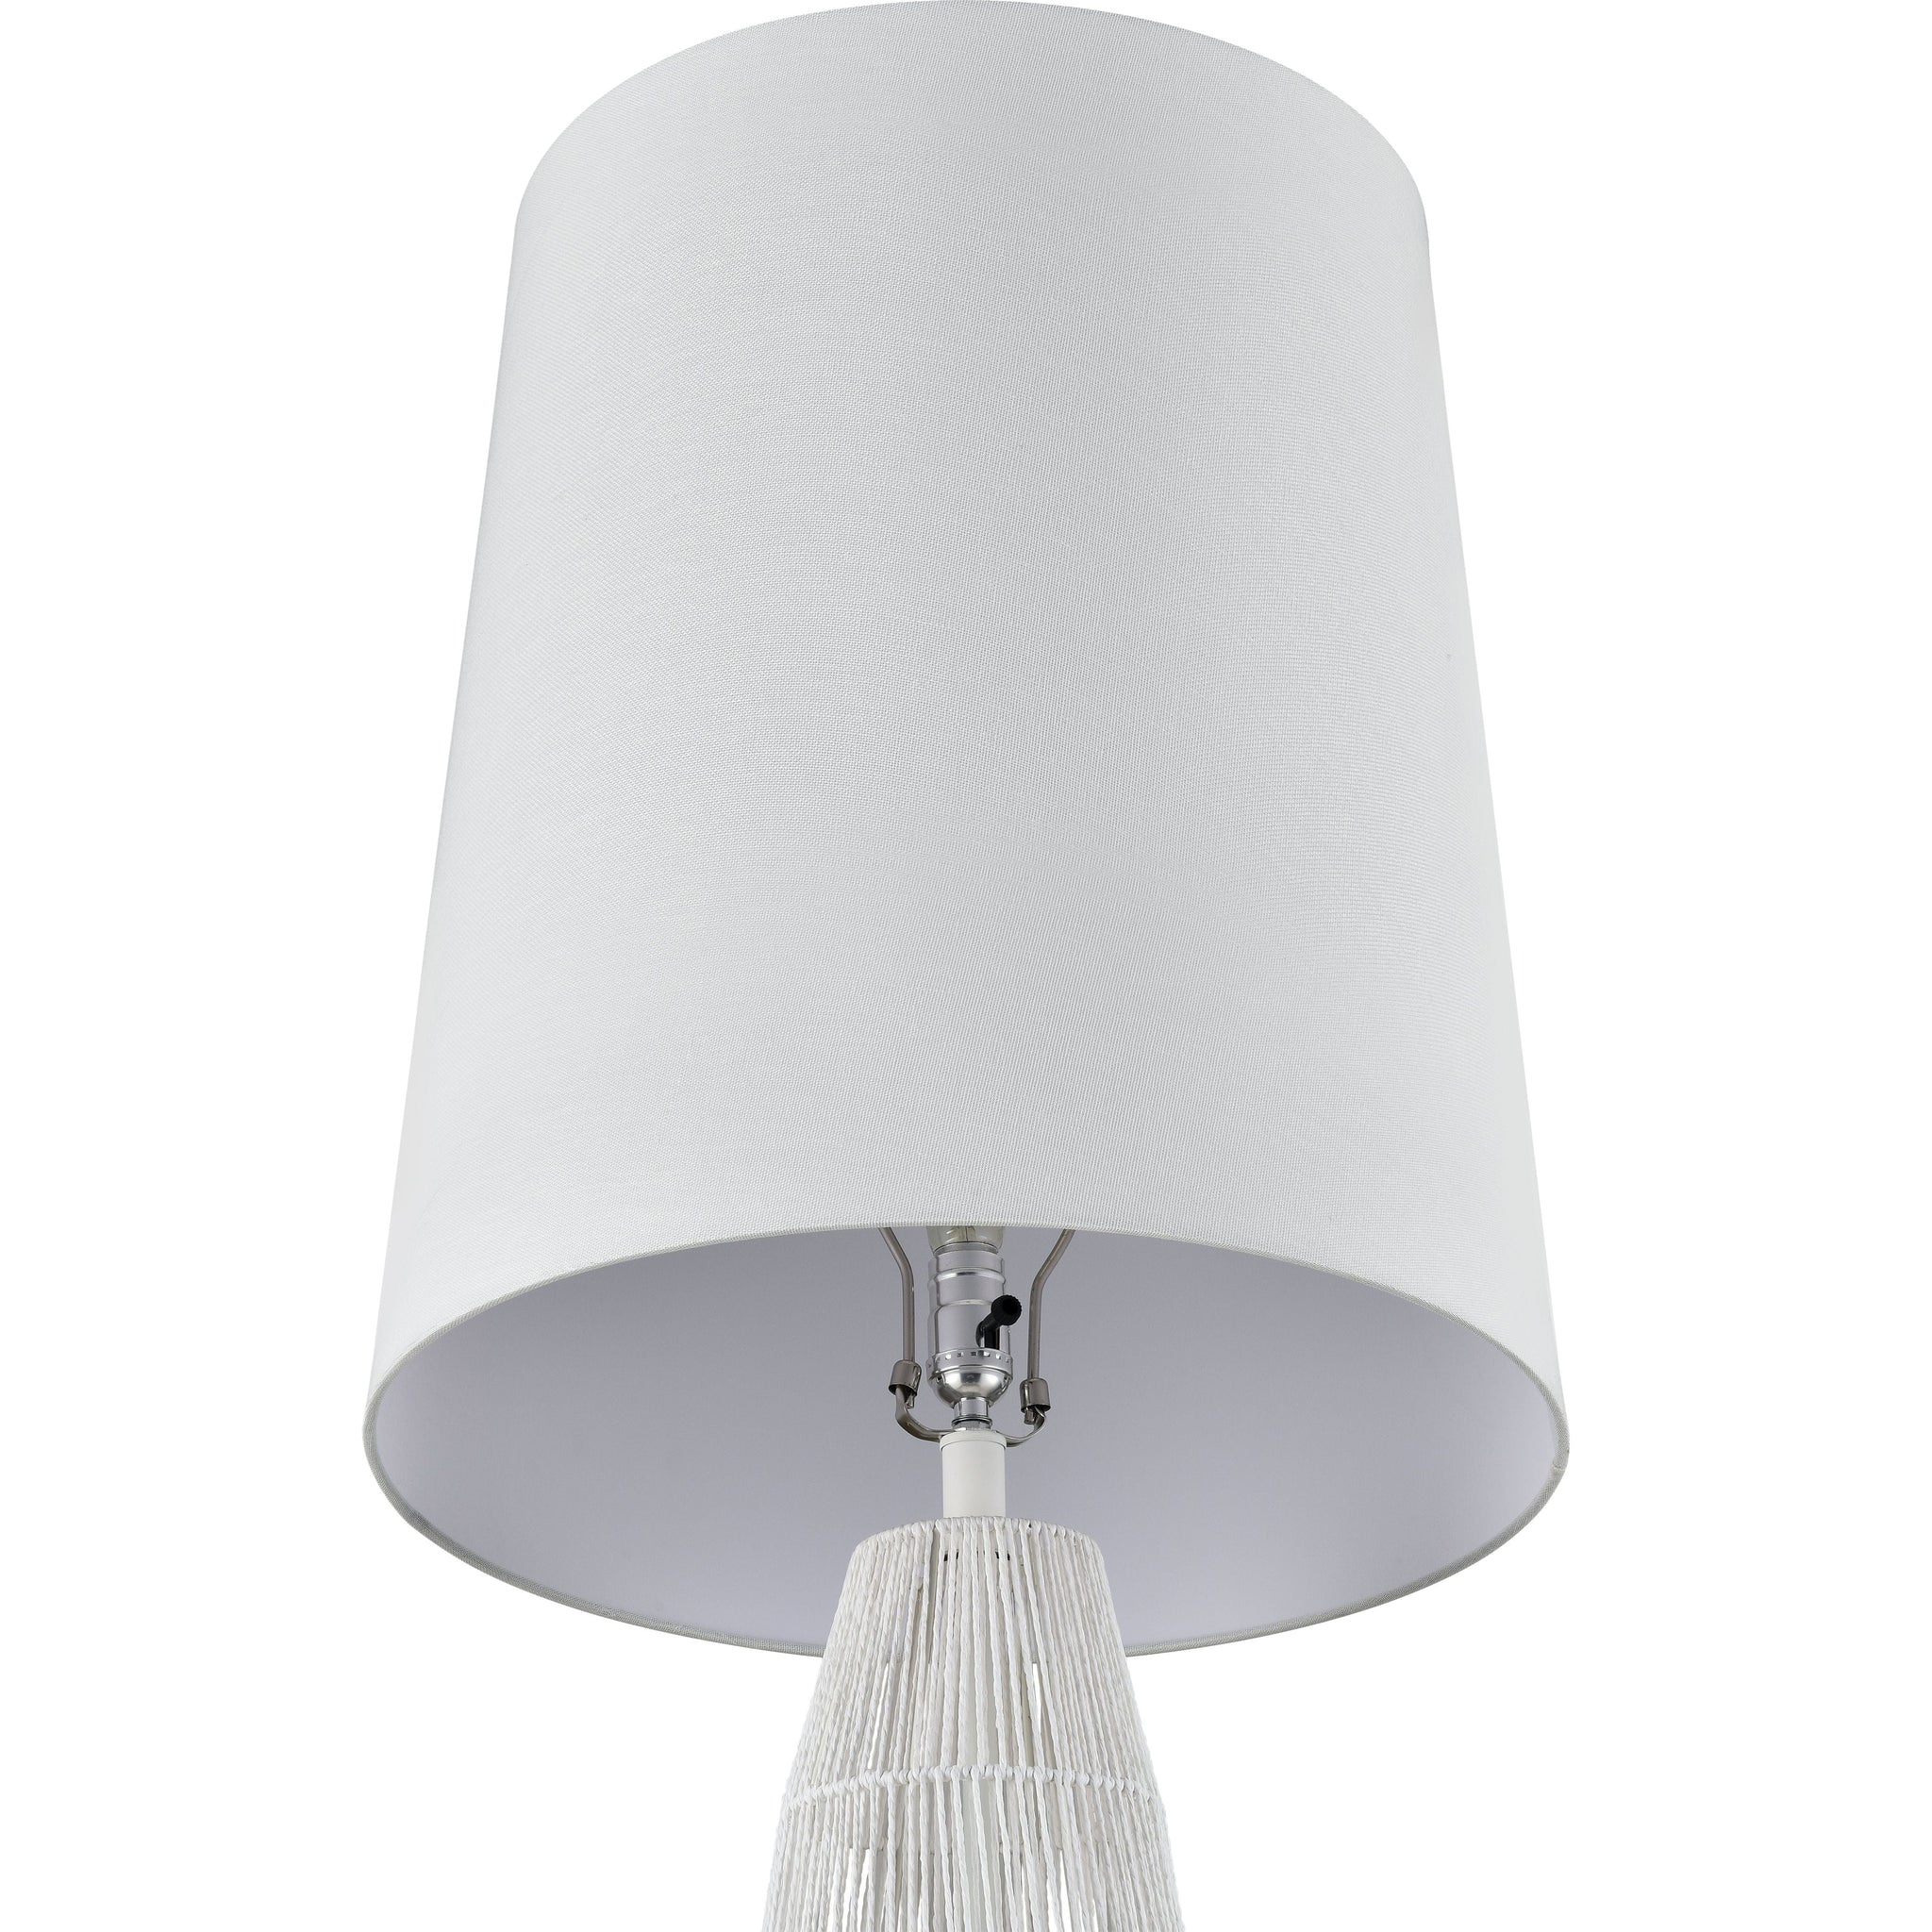 Husk 63" High 1-Light Floor Lamp